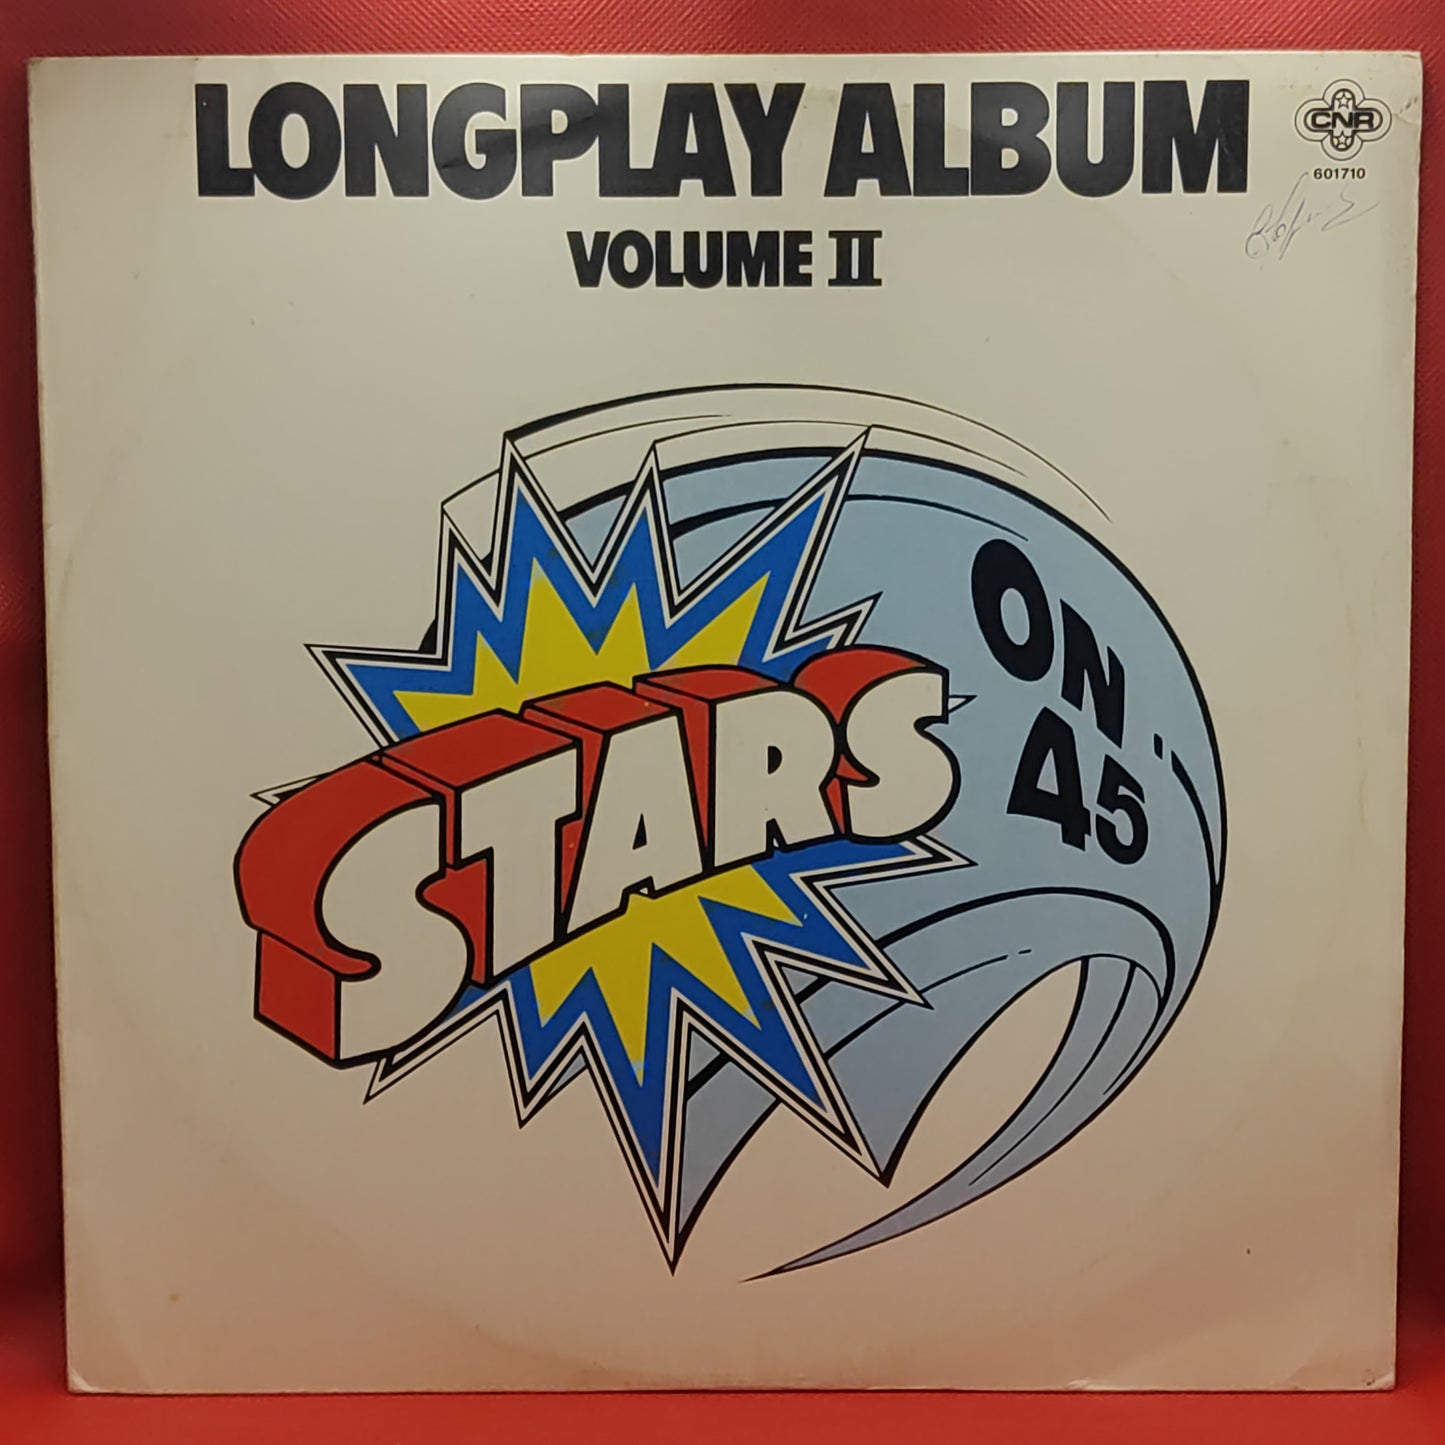 Stars On 45 – Stars On 45 Longplay Album (Volume II)